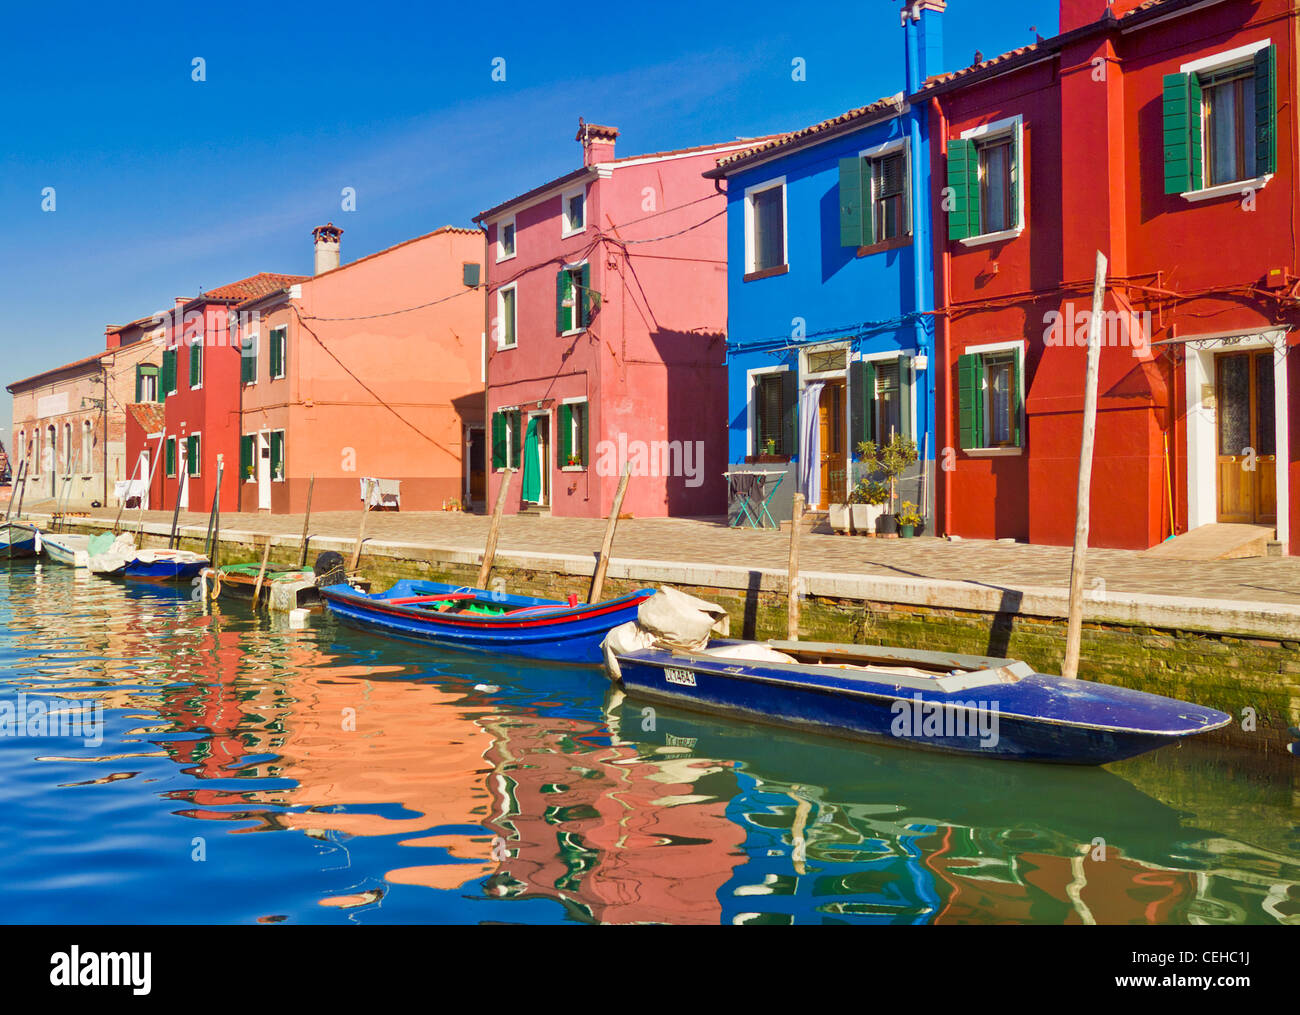 Des cottages de pêcheurs sur l'île de Burano, dans la lagune de Venise Italie Europe de l'UE Banque D'Images